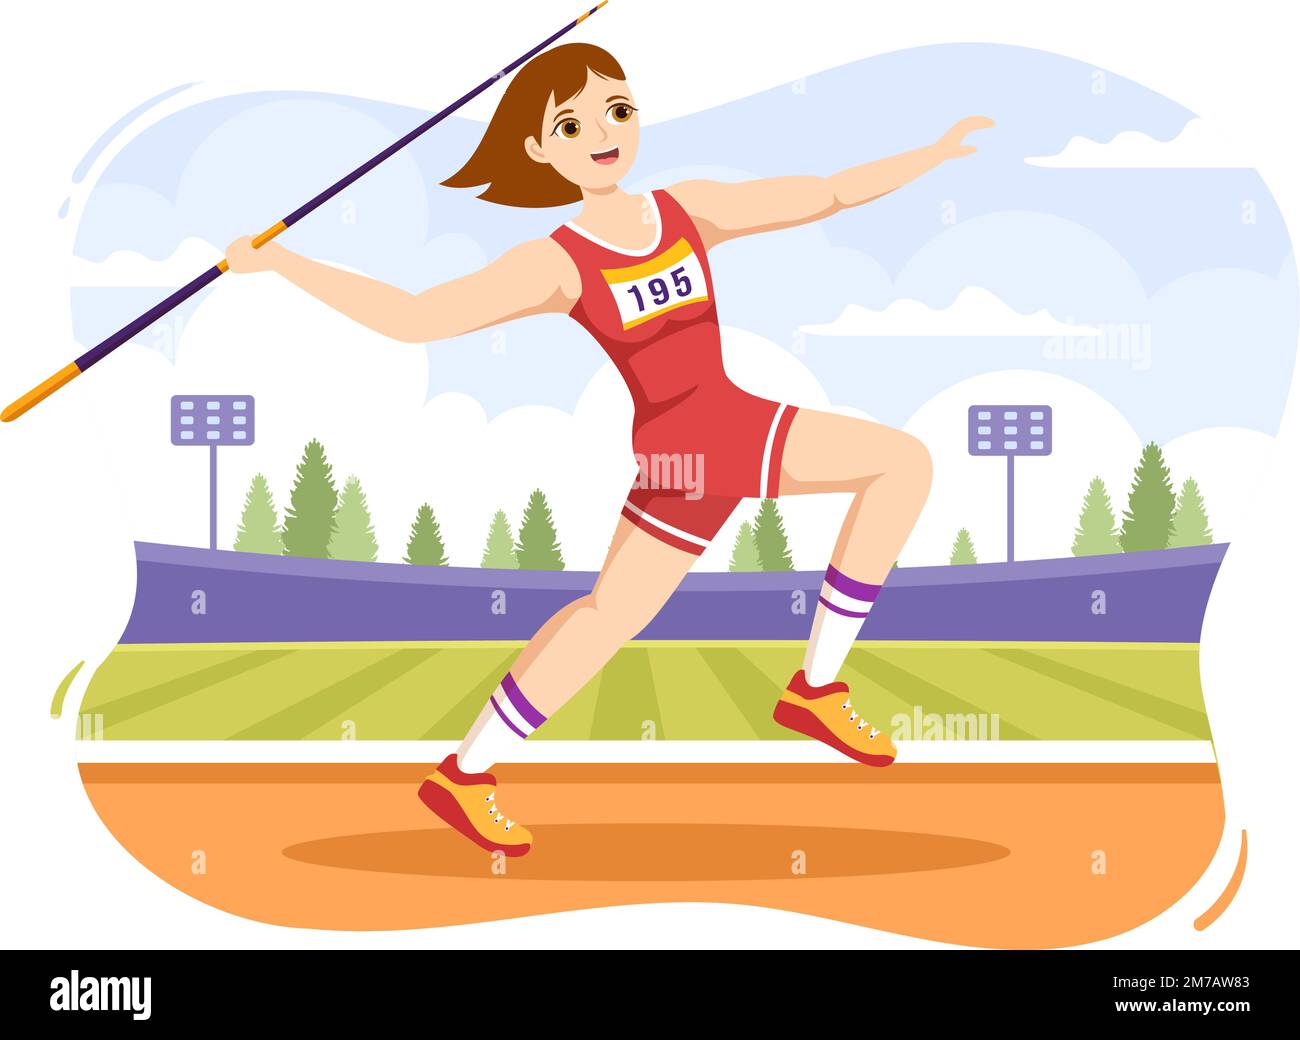 Javelin lancer l'illustration de l'athlète utilisation d'un long outil en forme de lance pour lancer dans l'activité sportive modèle de dessin à la main de dessin à la main de dessin à la main de dessin à la main Illustration de Vecteur